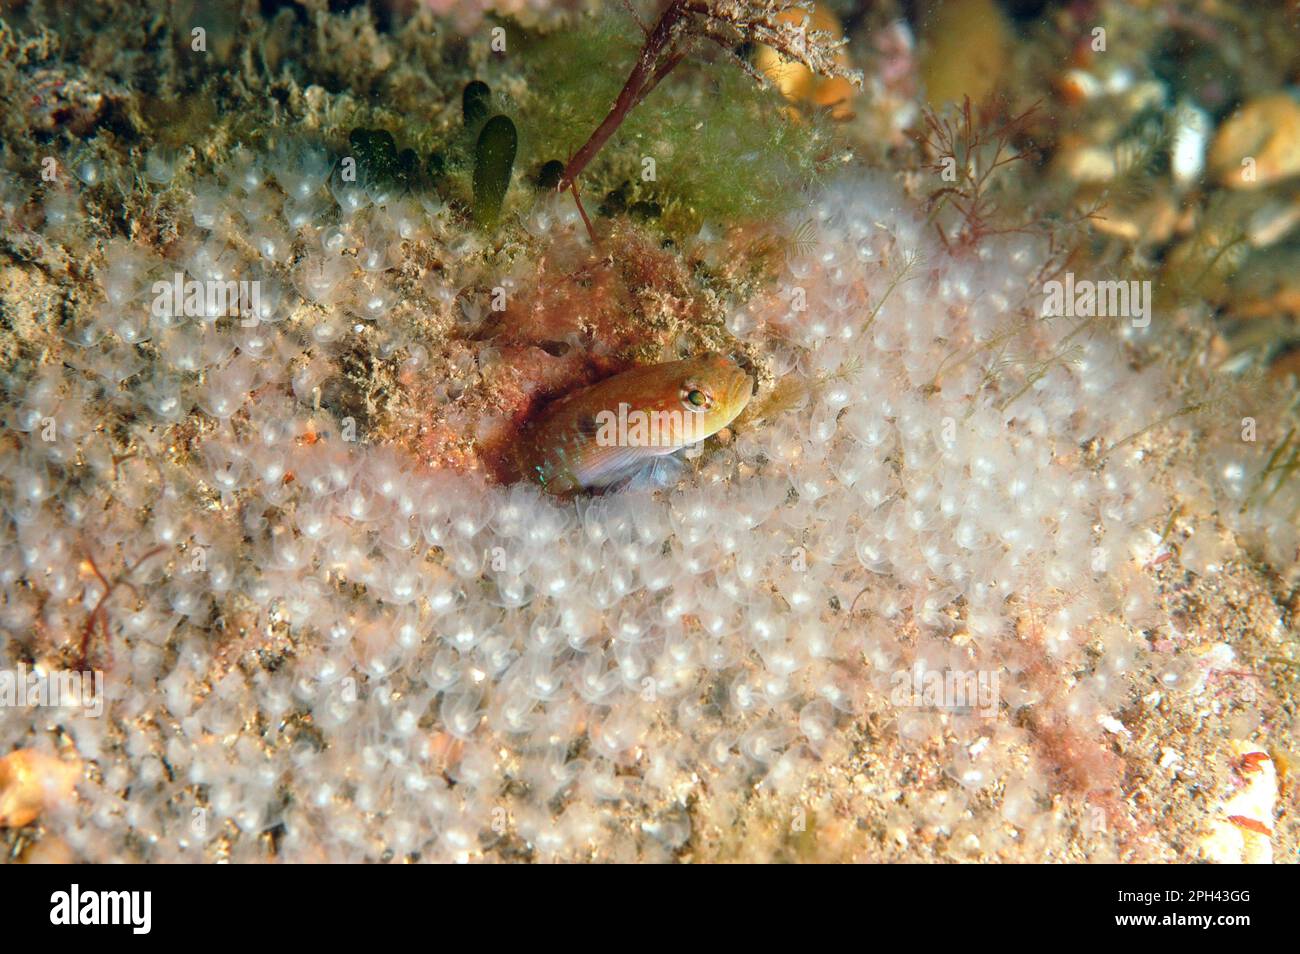 Two-spot Goby (Gobiusculus flavescens) adult, amongst Horseshoe Worms (Phoronis hippocrepia), Swanage, Dorset, England, United Kingdom Stock Photo